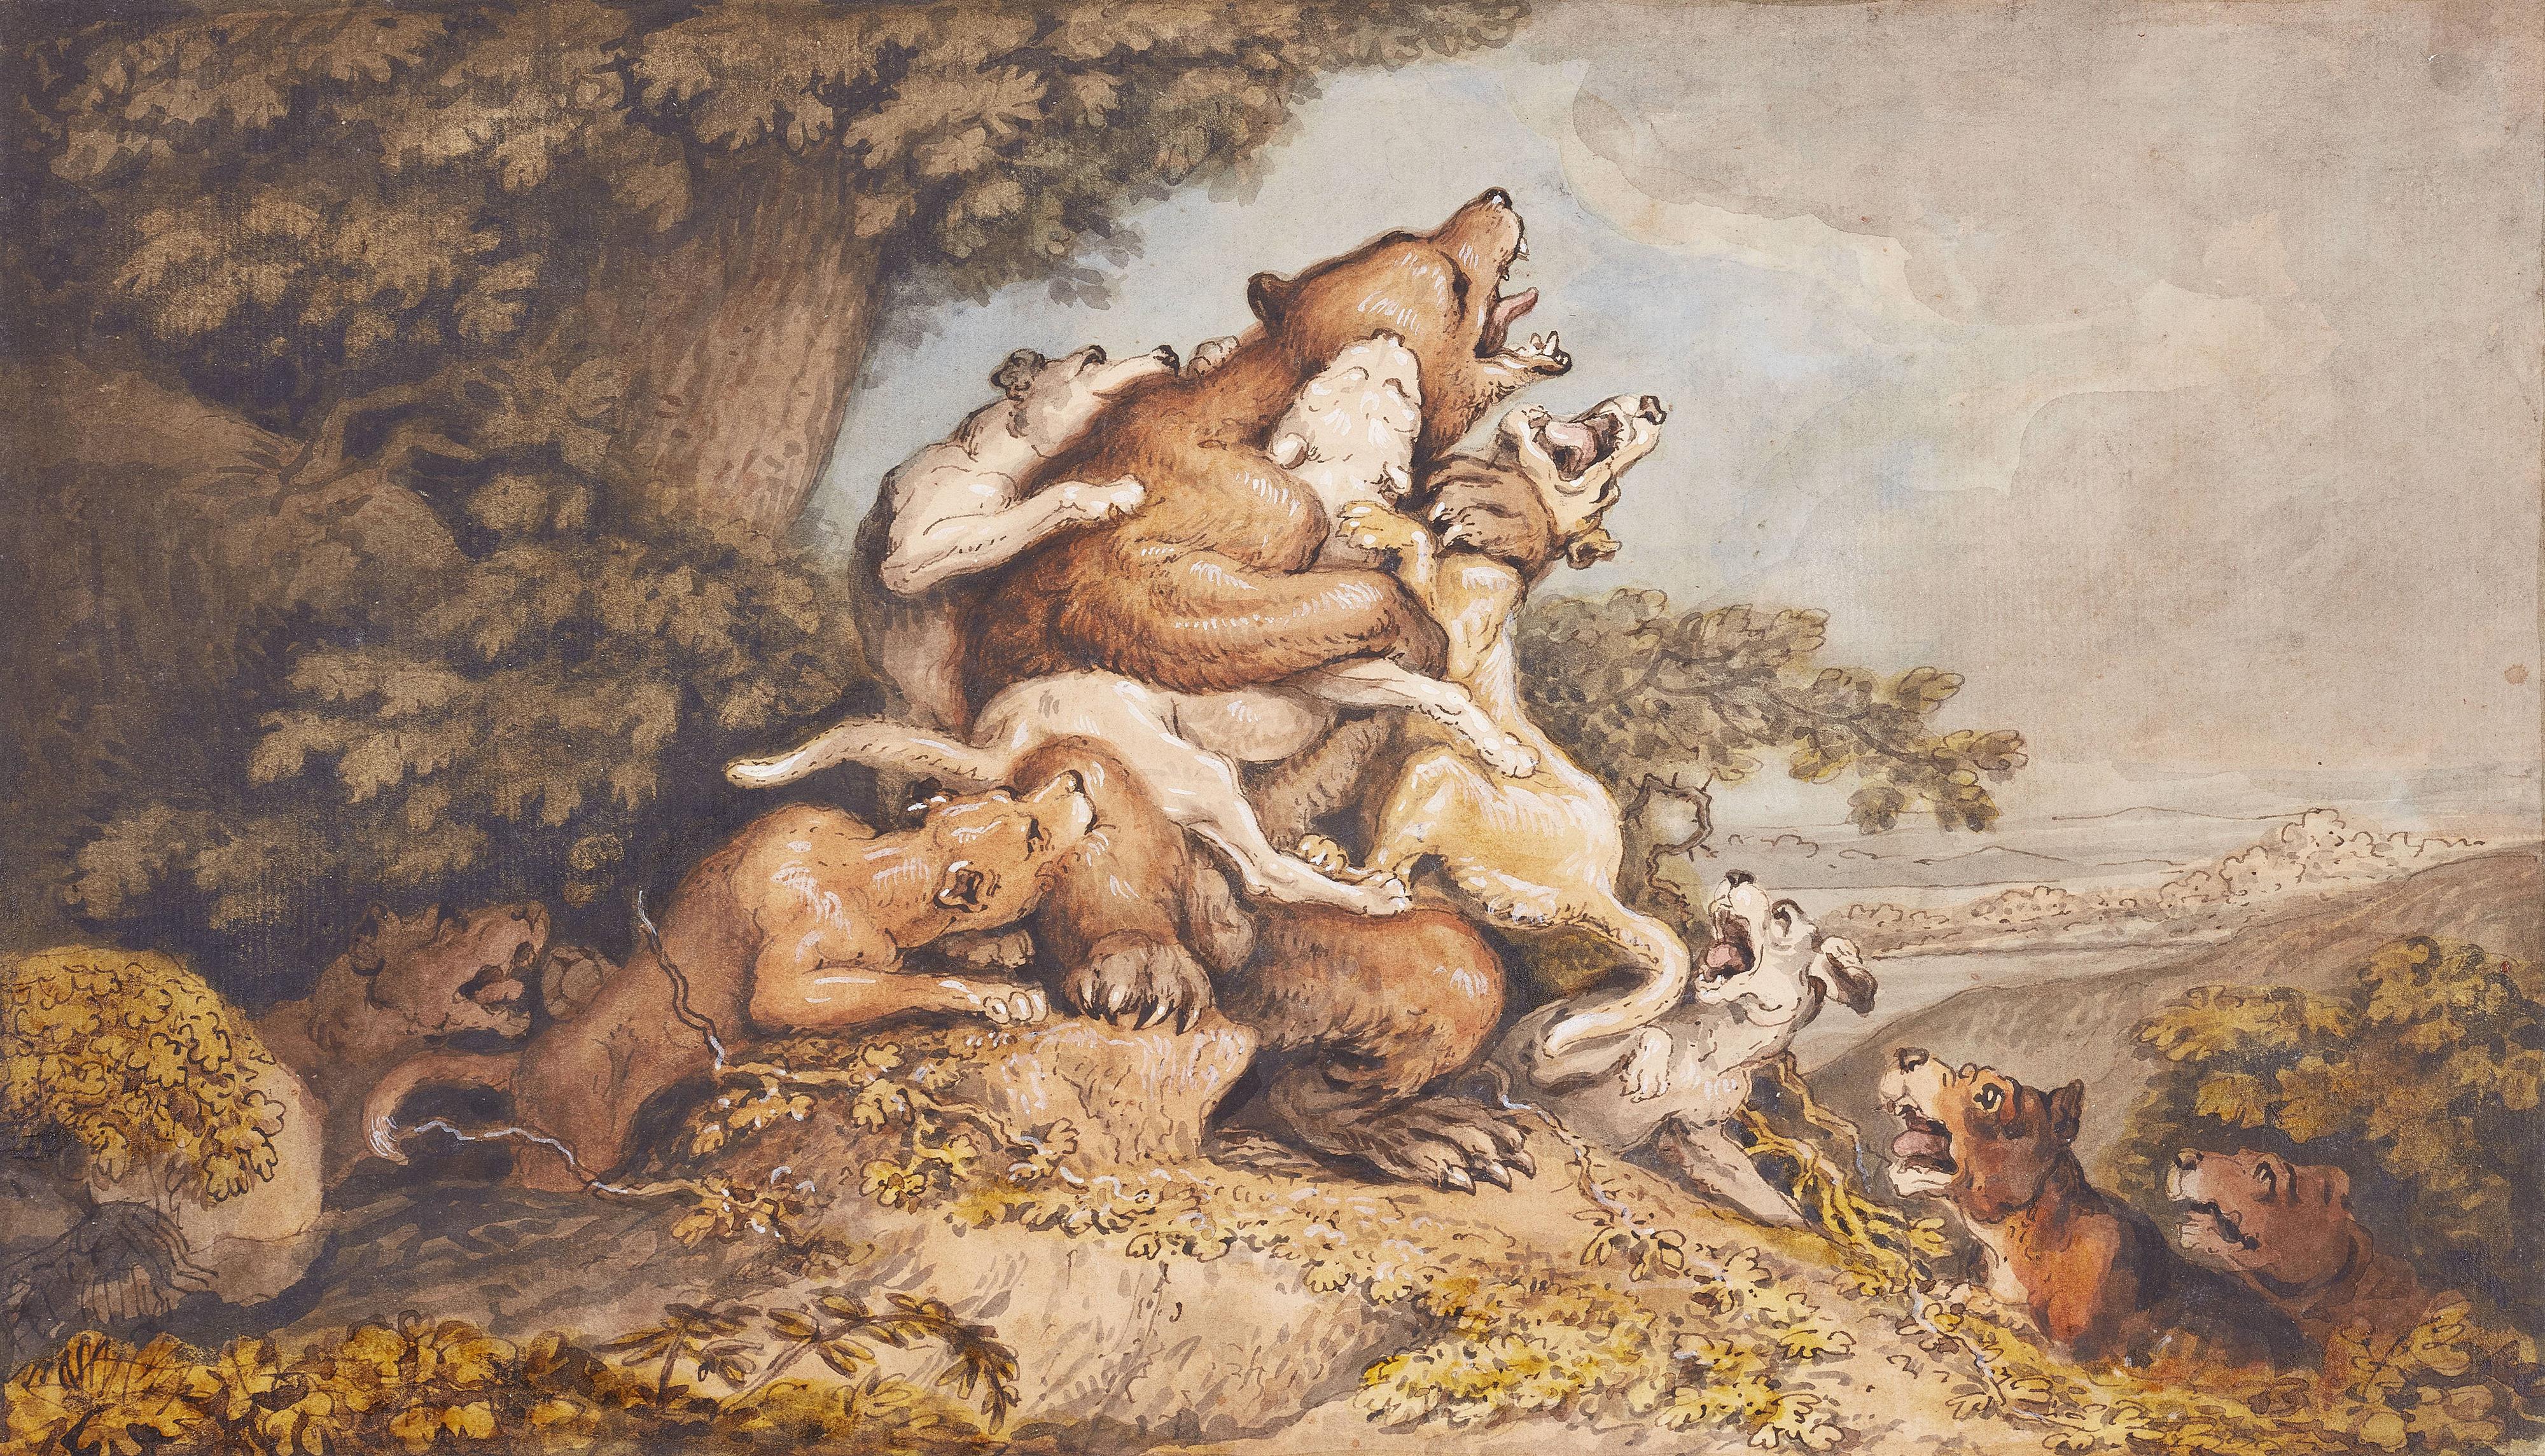 Johann Heinrich Wilhelm Tischbein - Jagdhunde greifen einen Bären an

Dazu: Kreideskizze, Jagdhund greift einen Bären an - image-1